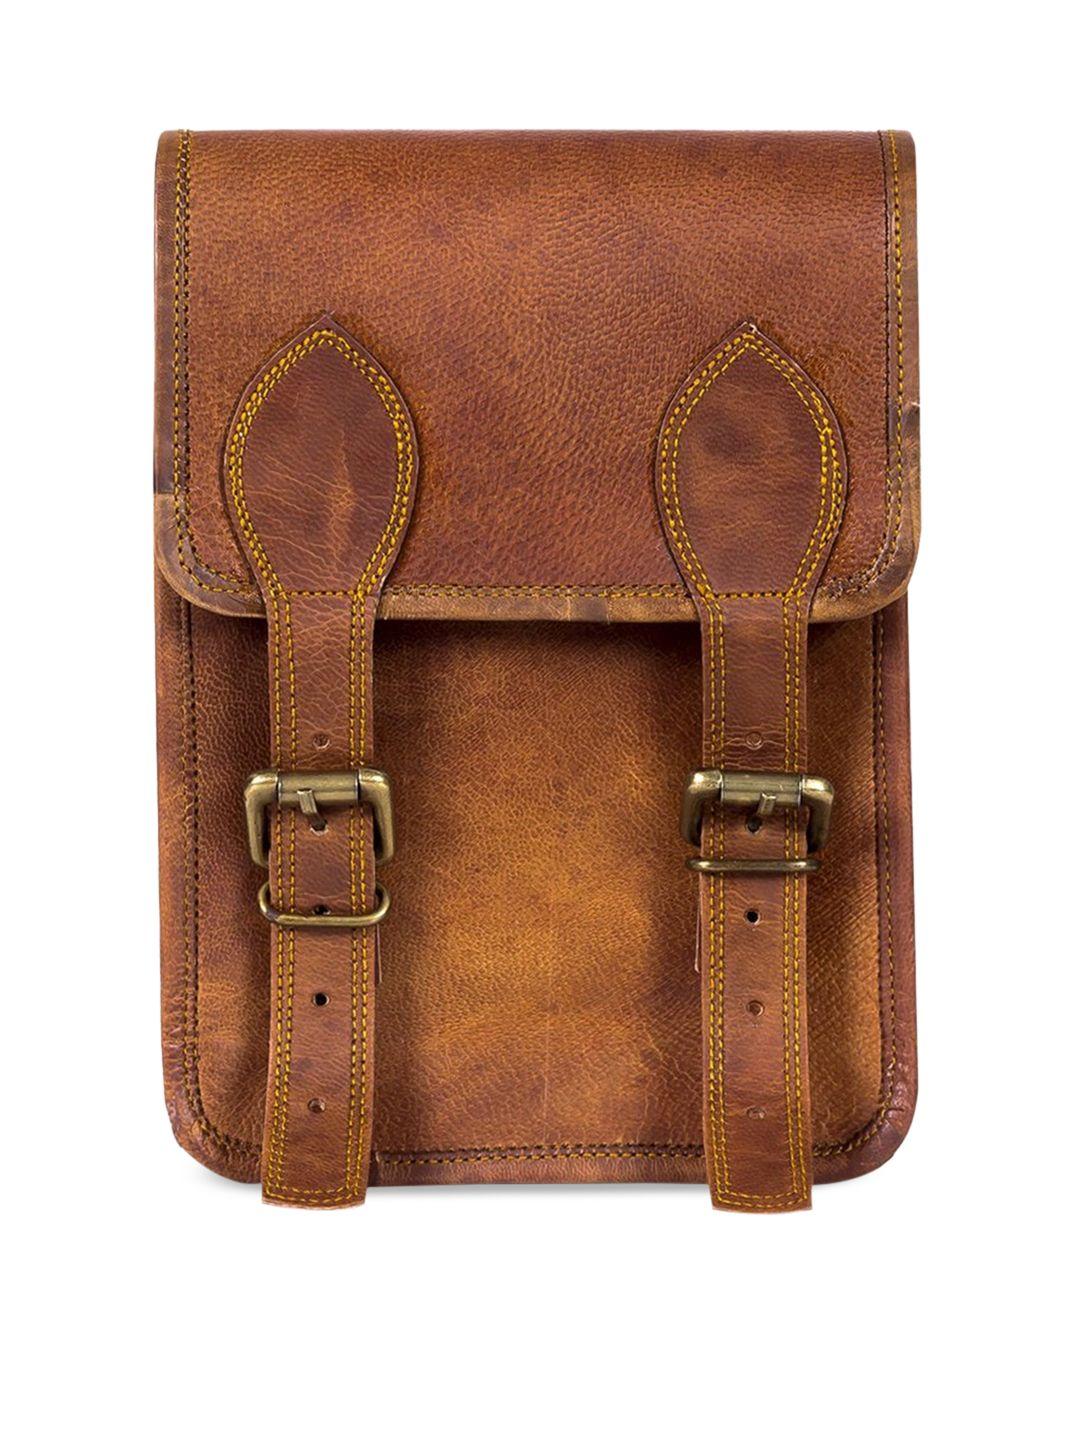 goatter solid structured satchel